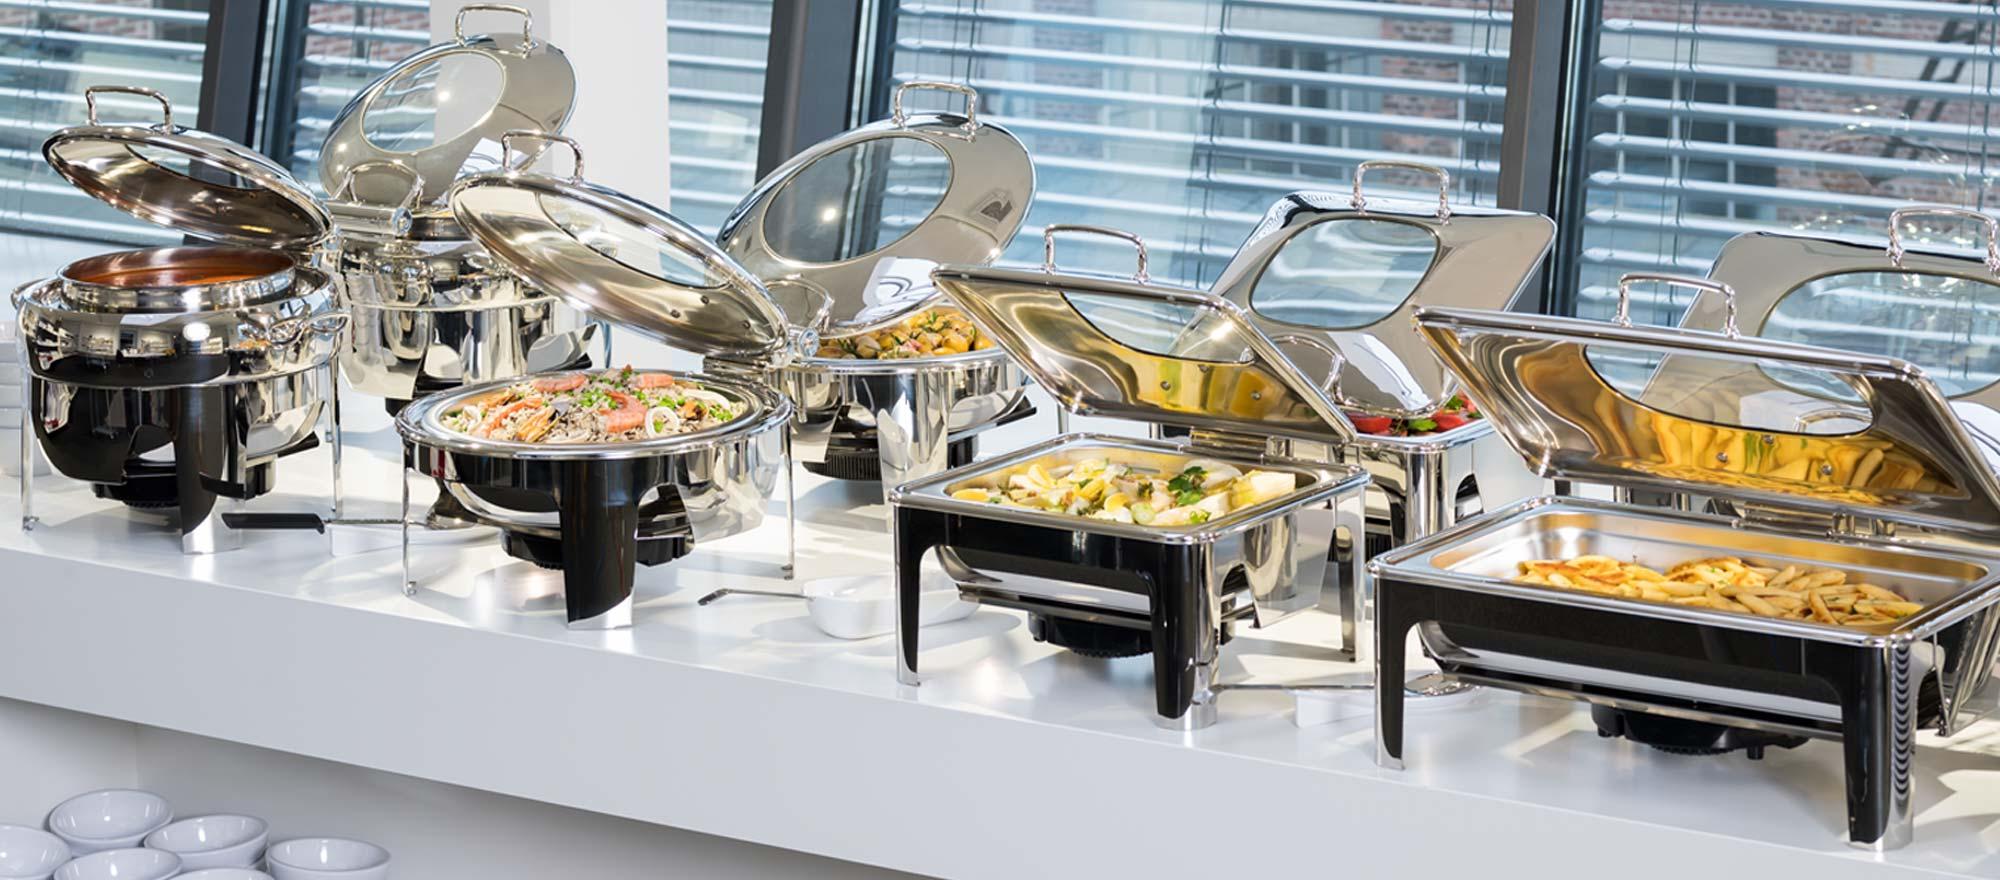 Chafing dish de qualité professionnelle pour les buffets ; ils permettent de garder les plats au chaud la durée du petit déjeuner.